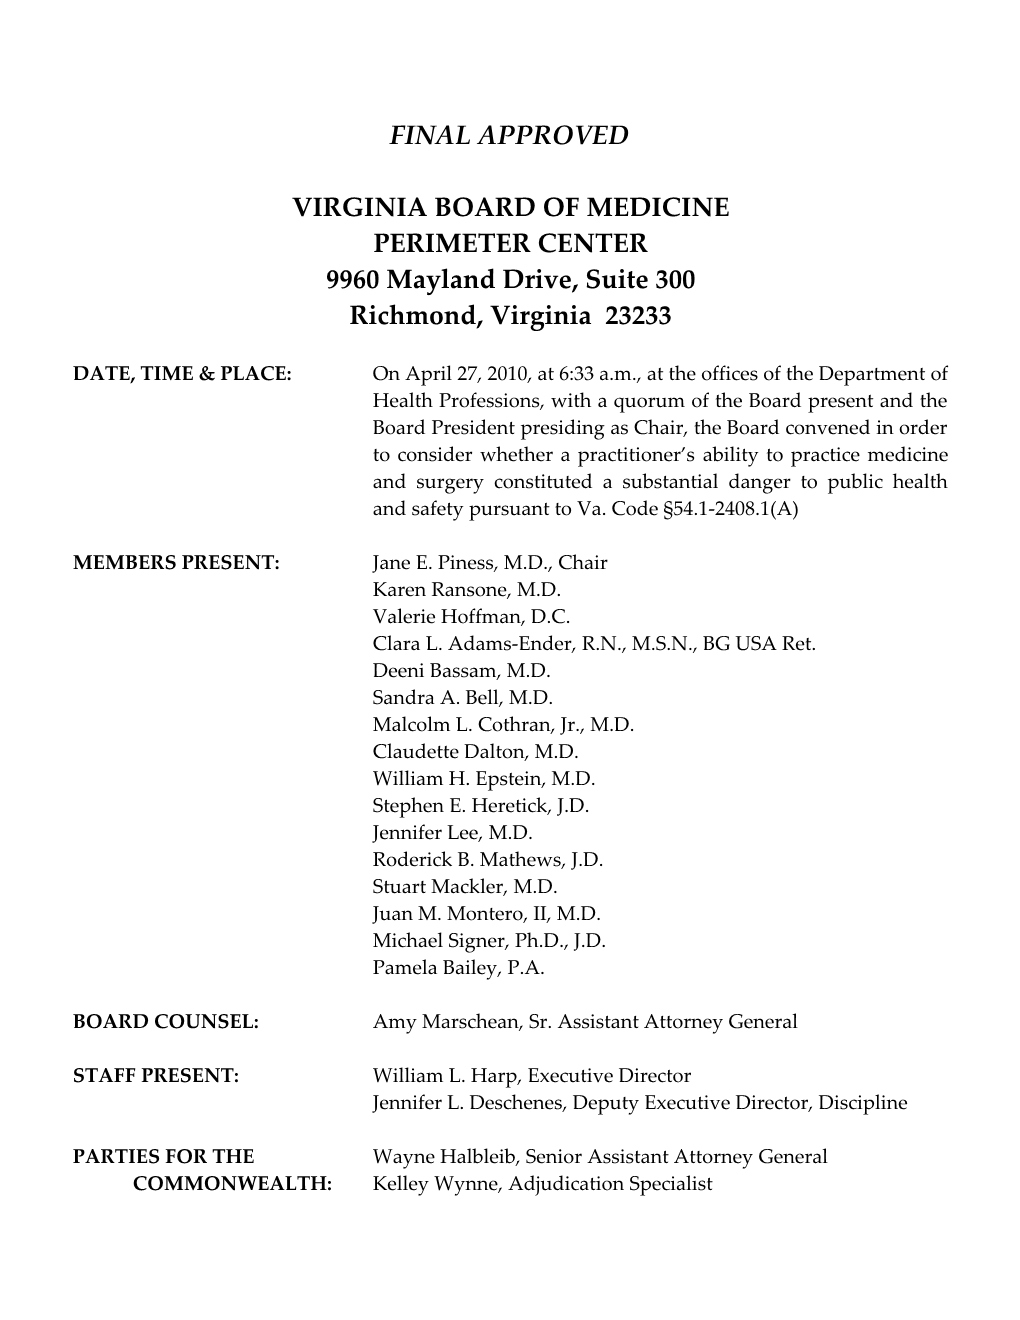 Virginia Board of Medicine Minutes Page #2